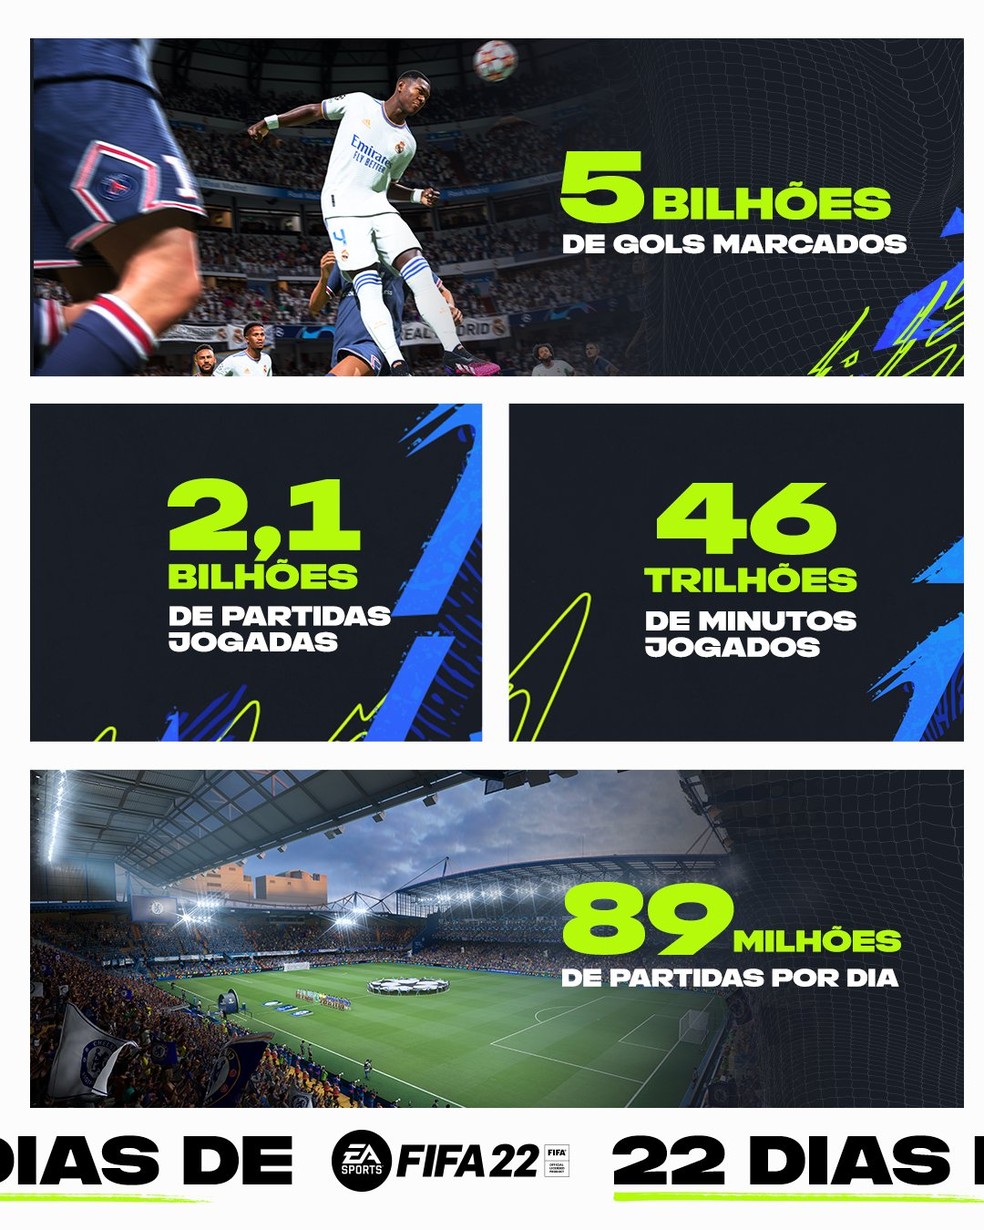 FIFA 22 ultrapassa 2 bilhões de partidas no mundo em menos de um mês